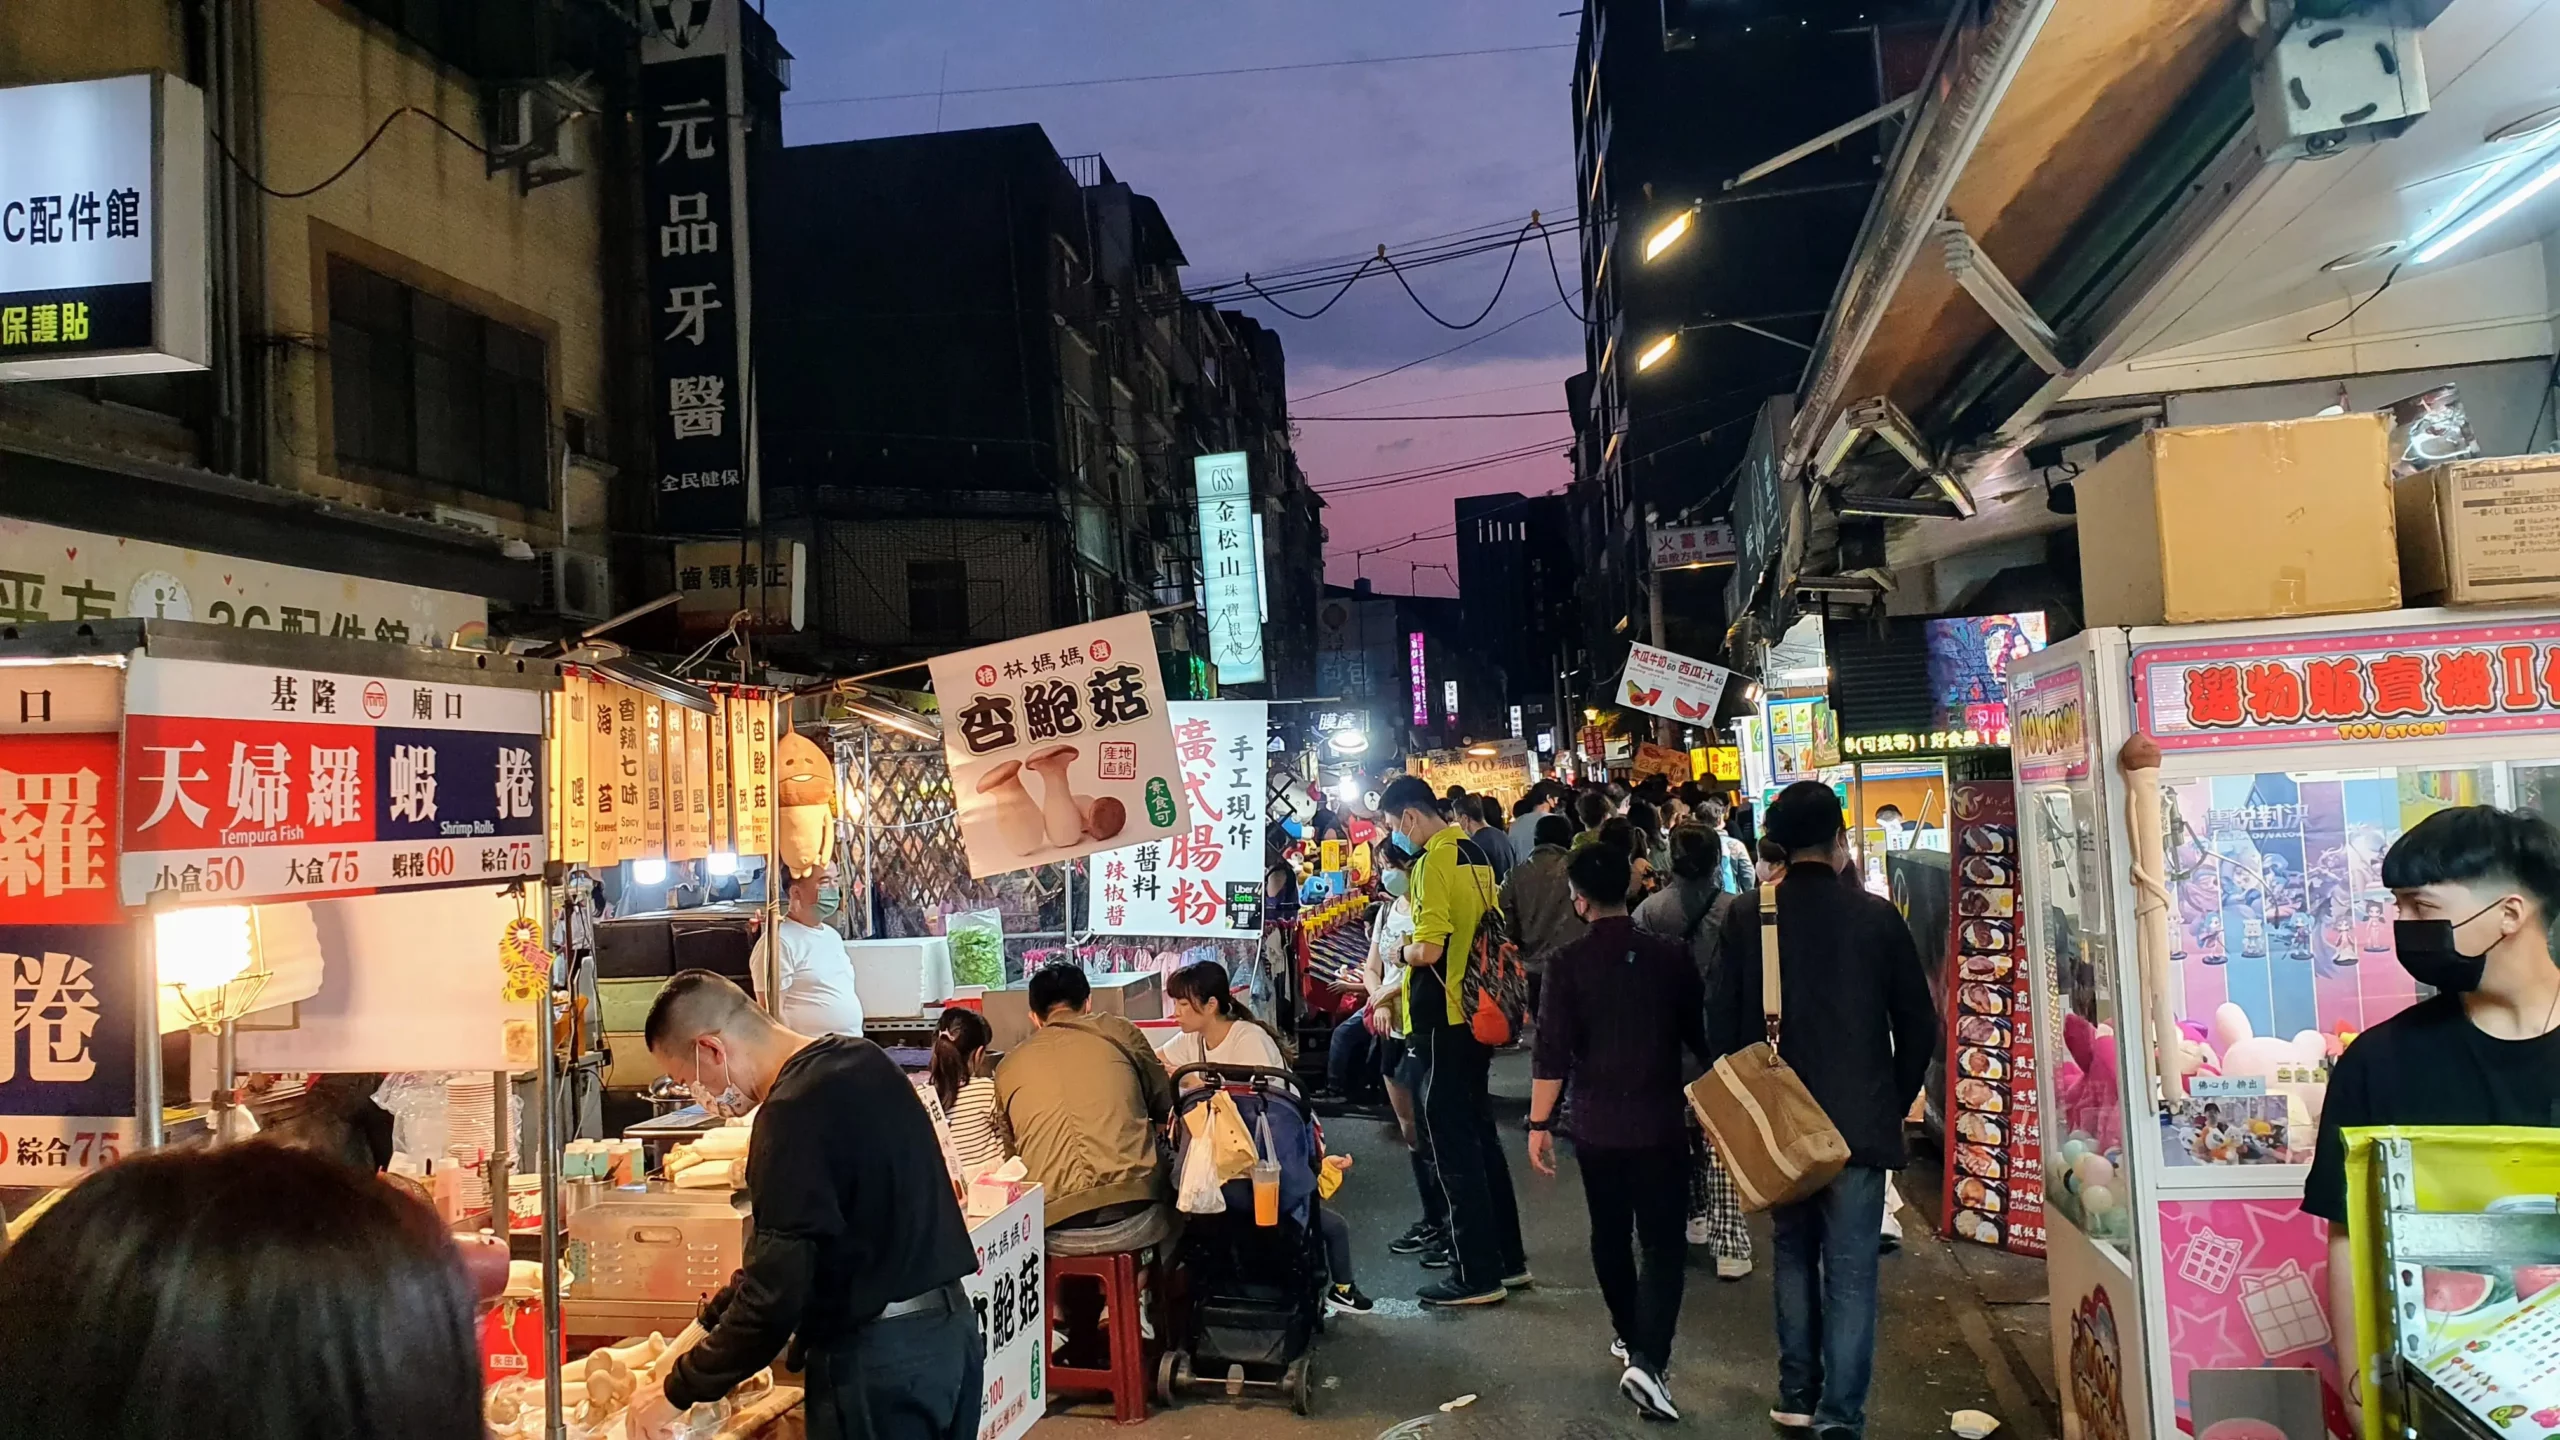 Raohe Night Market, Songshan District, Taipei City, Taiwan